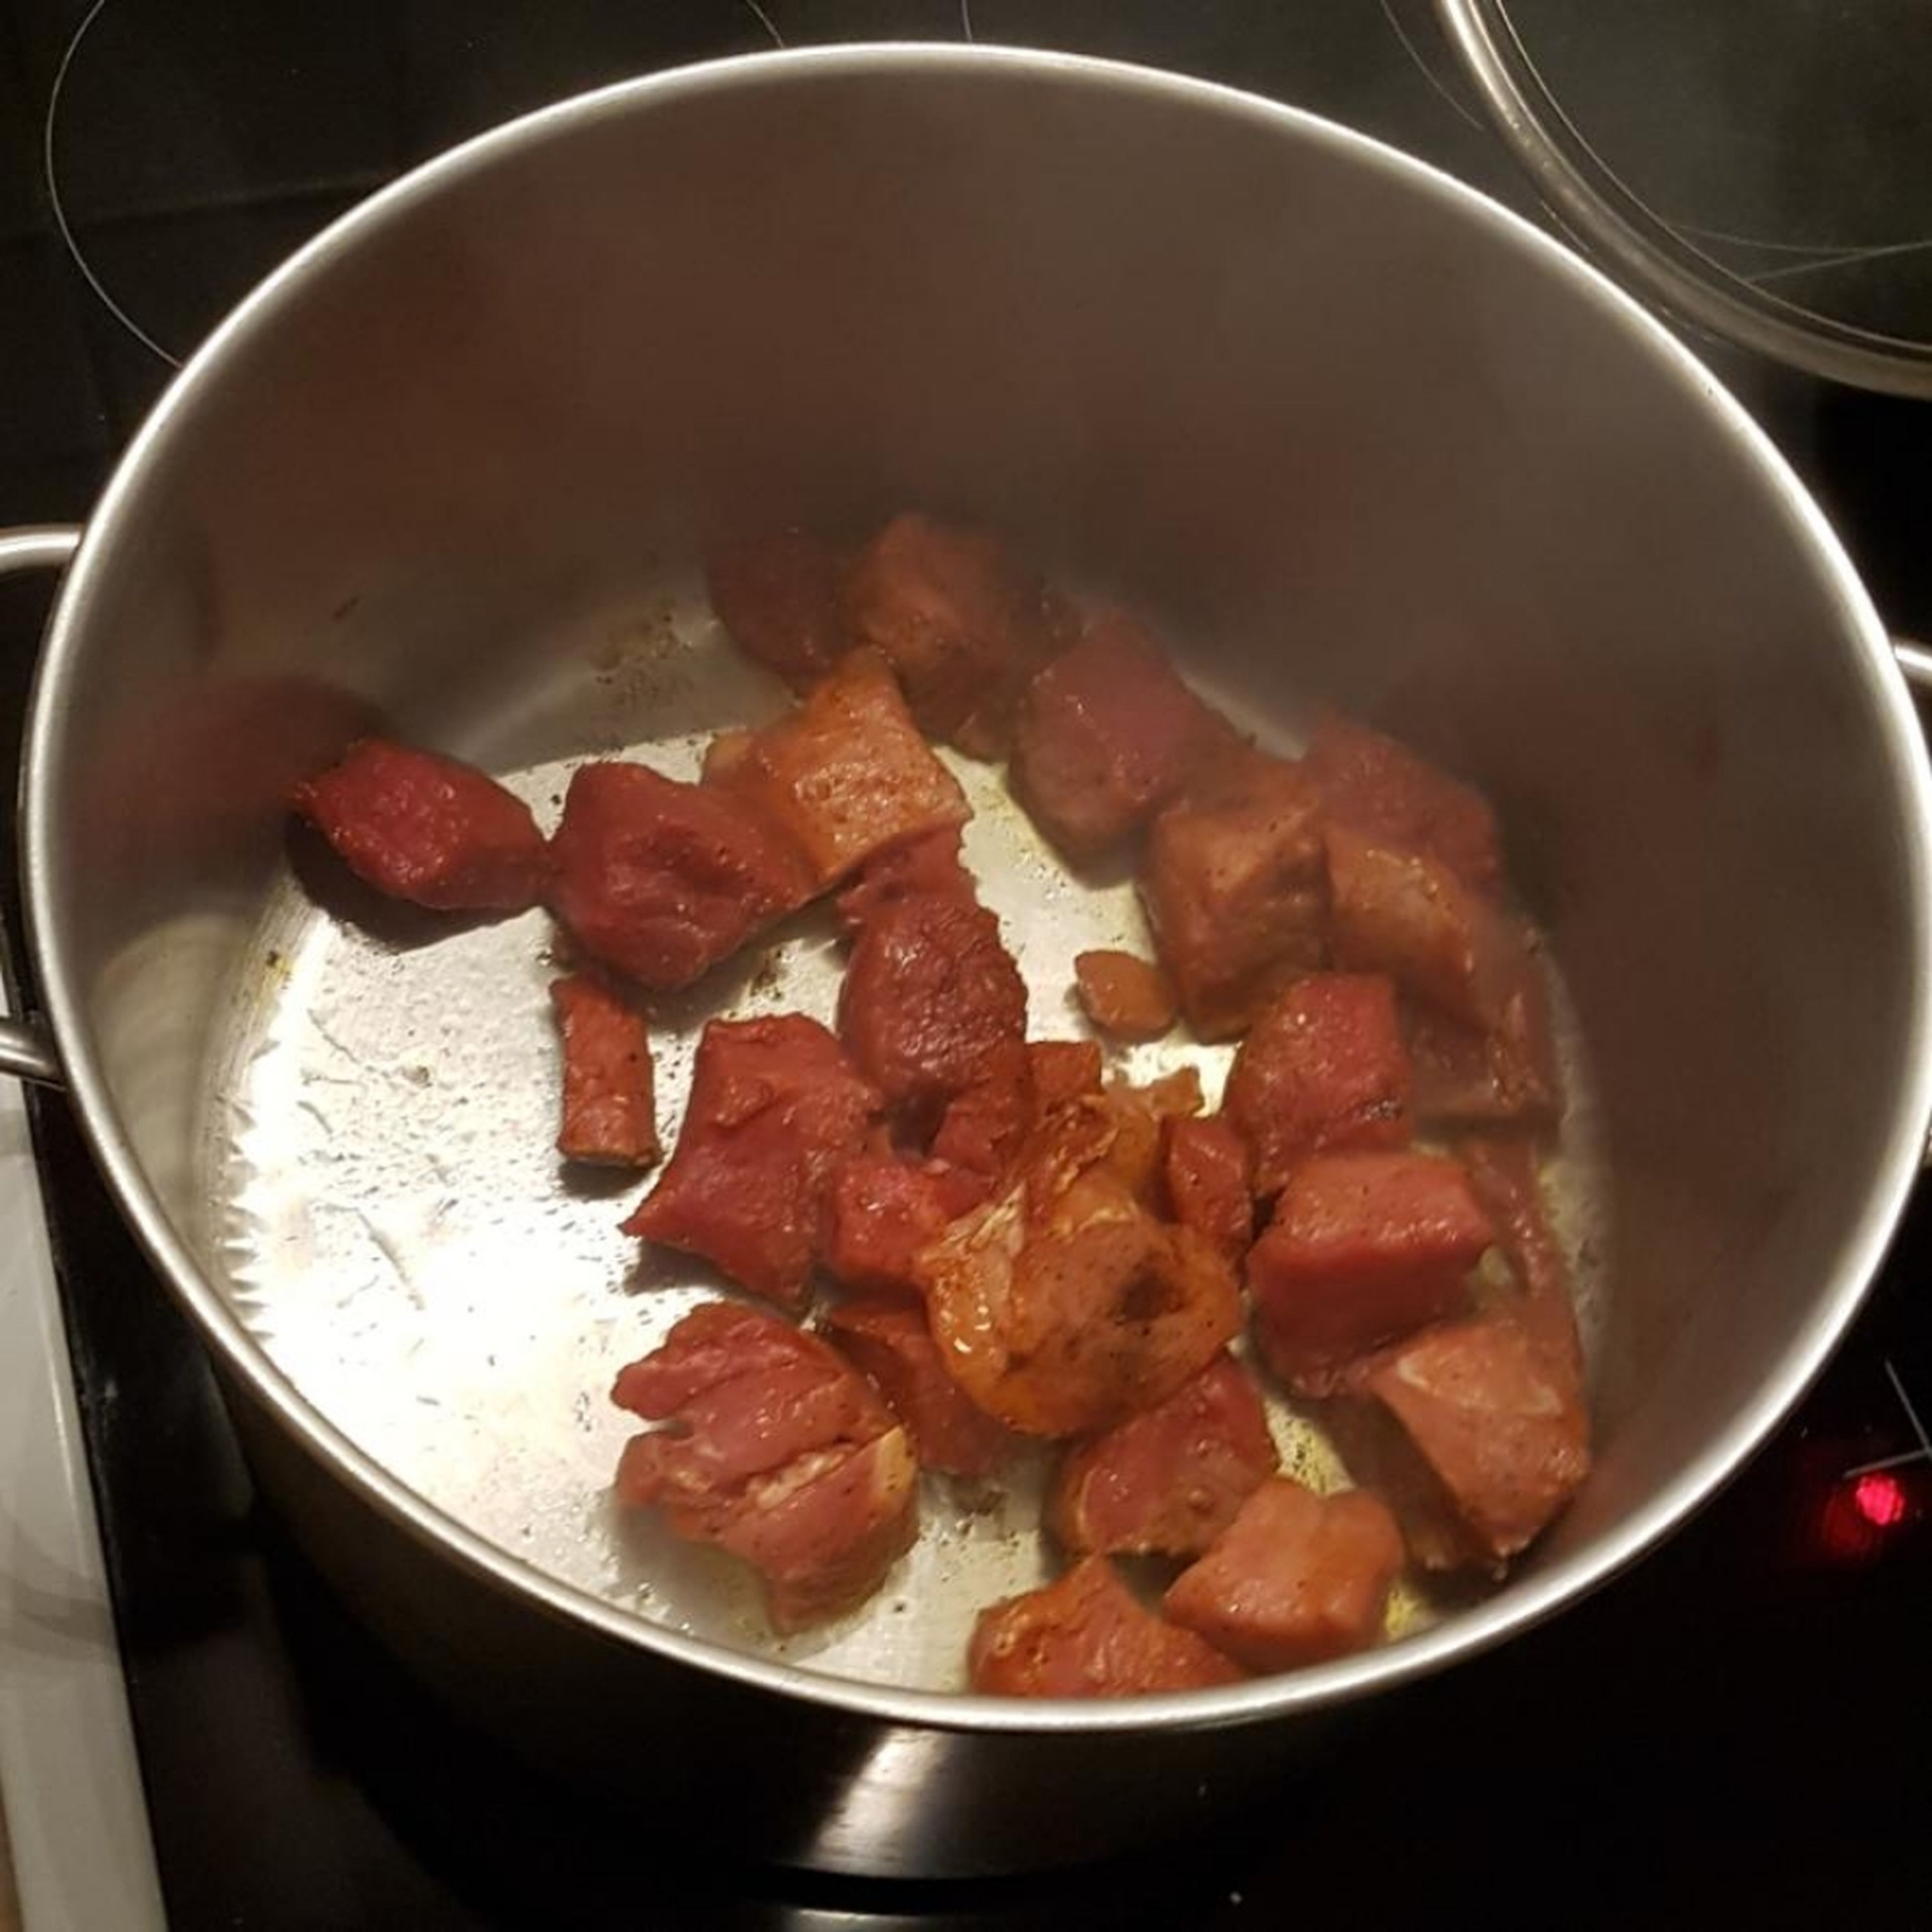 Öl in einem Topf stark erhitzen und dann das Fleisch darin rundherum scharf anbraten und dabei Tomatenmark hinzugeben. Anschließend das Fleisch aus dem Topf nehmen und beiseite stellen.